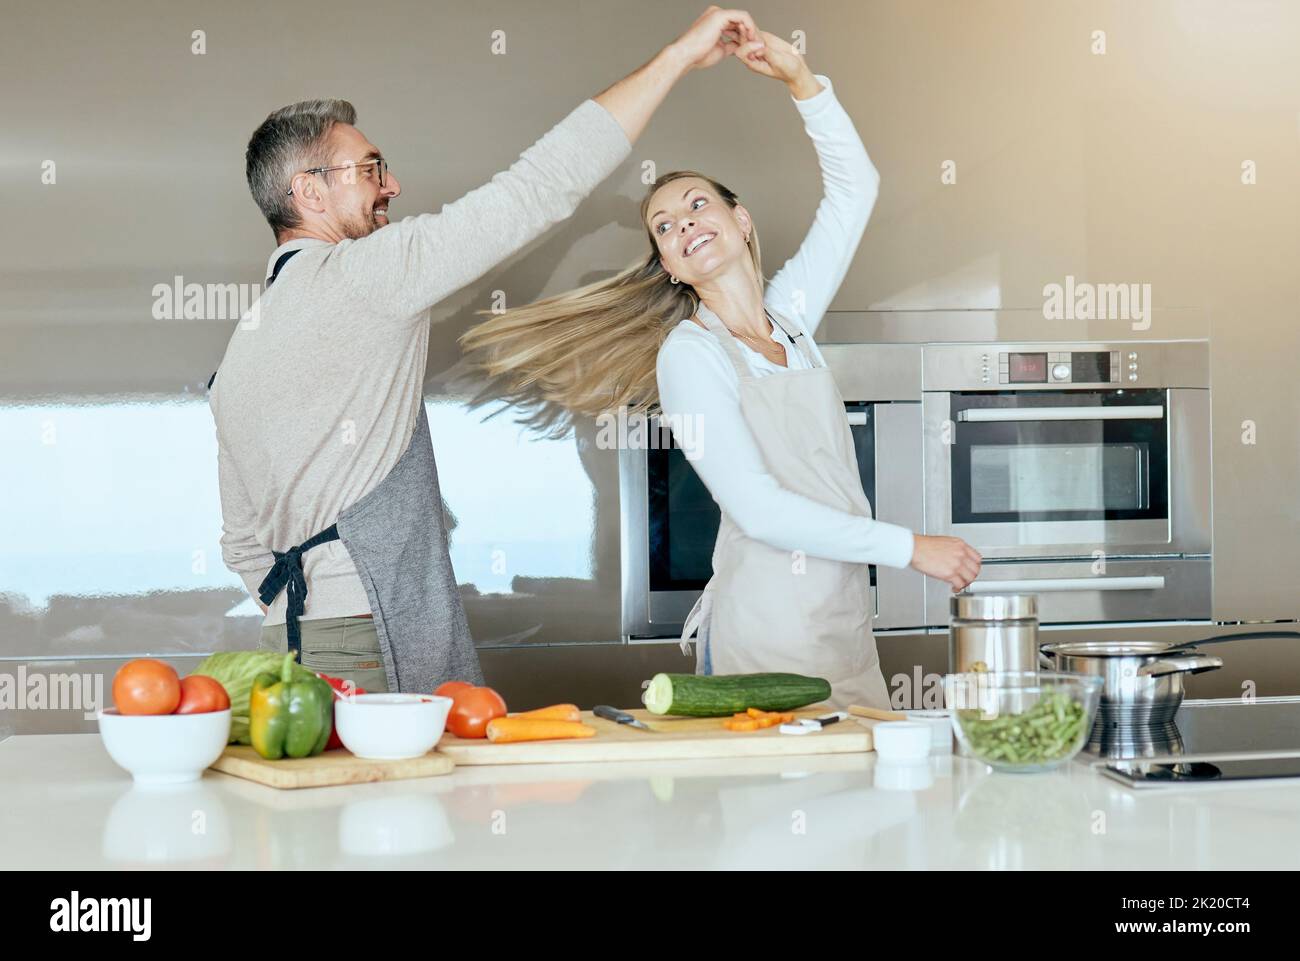 Tanzendes Paar, Kochen und Liebe in der Küche, während Gemüse für eine gesunde, organische und vegane Mahlzeit oder Salat zubereitet wird. Glücklicher Mann und Frau mit Stockfoto